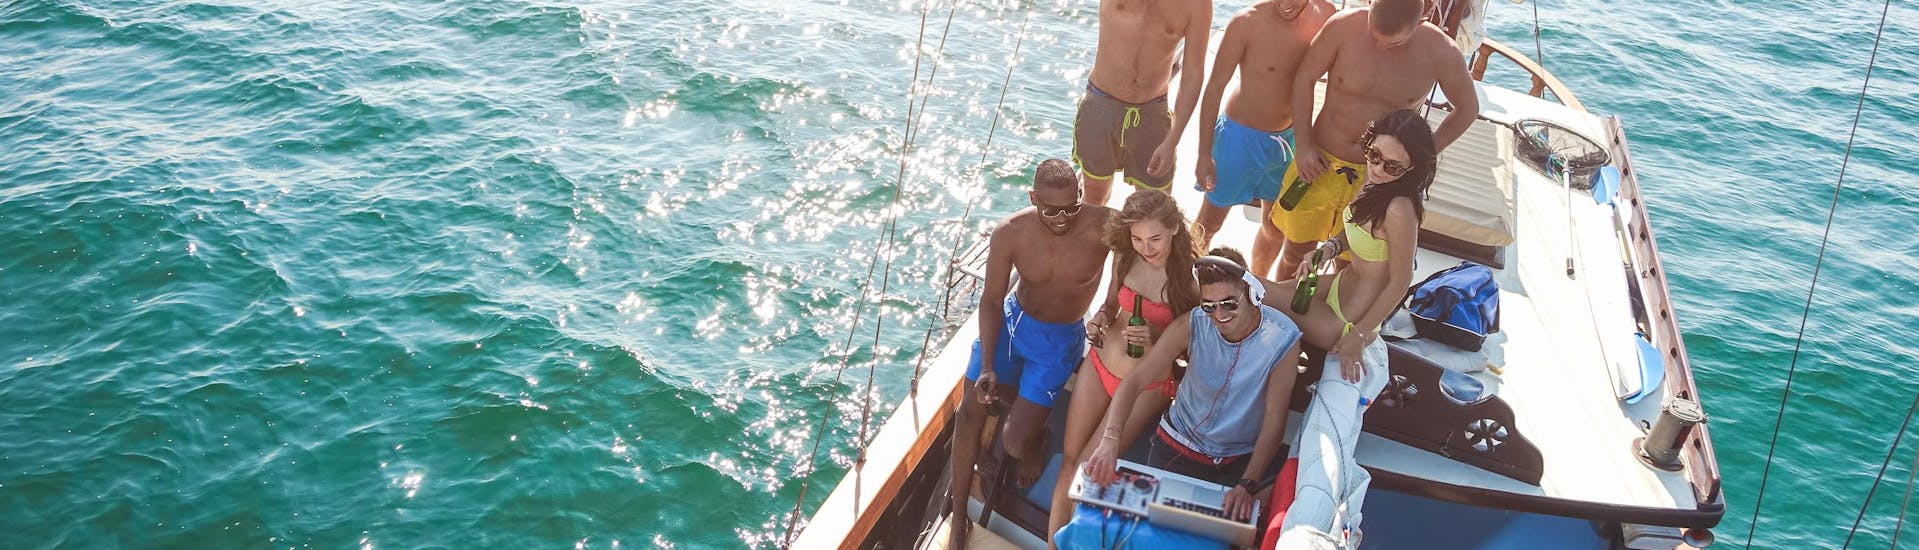 Een groep vrienden geniet van hun tijd tijdens een boottocht met livemuziek en dj.